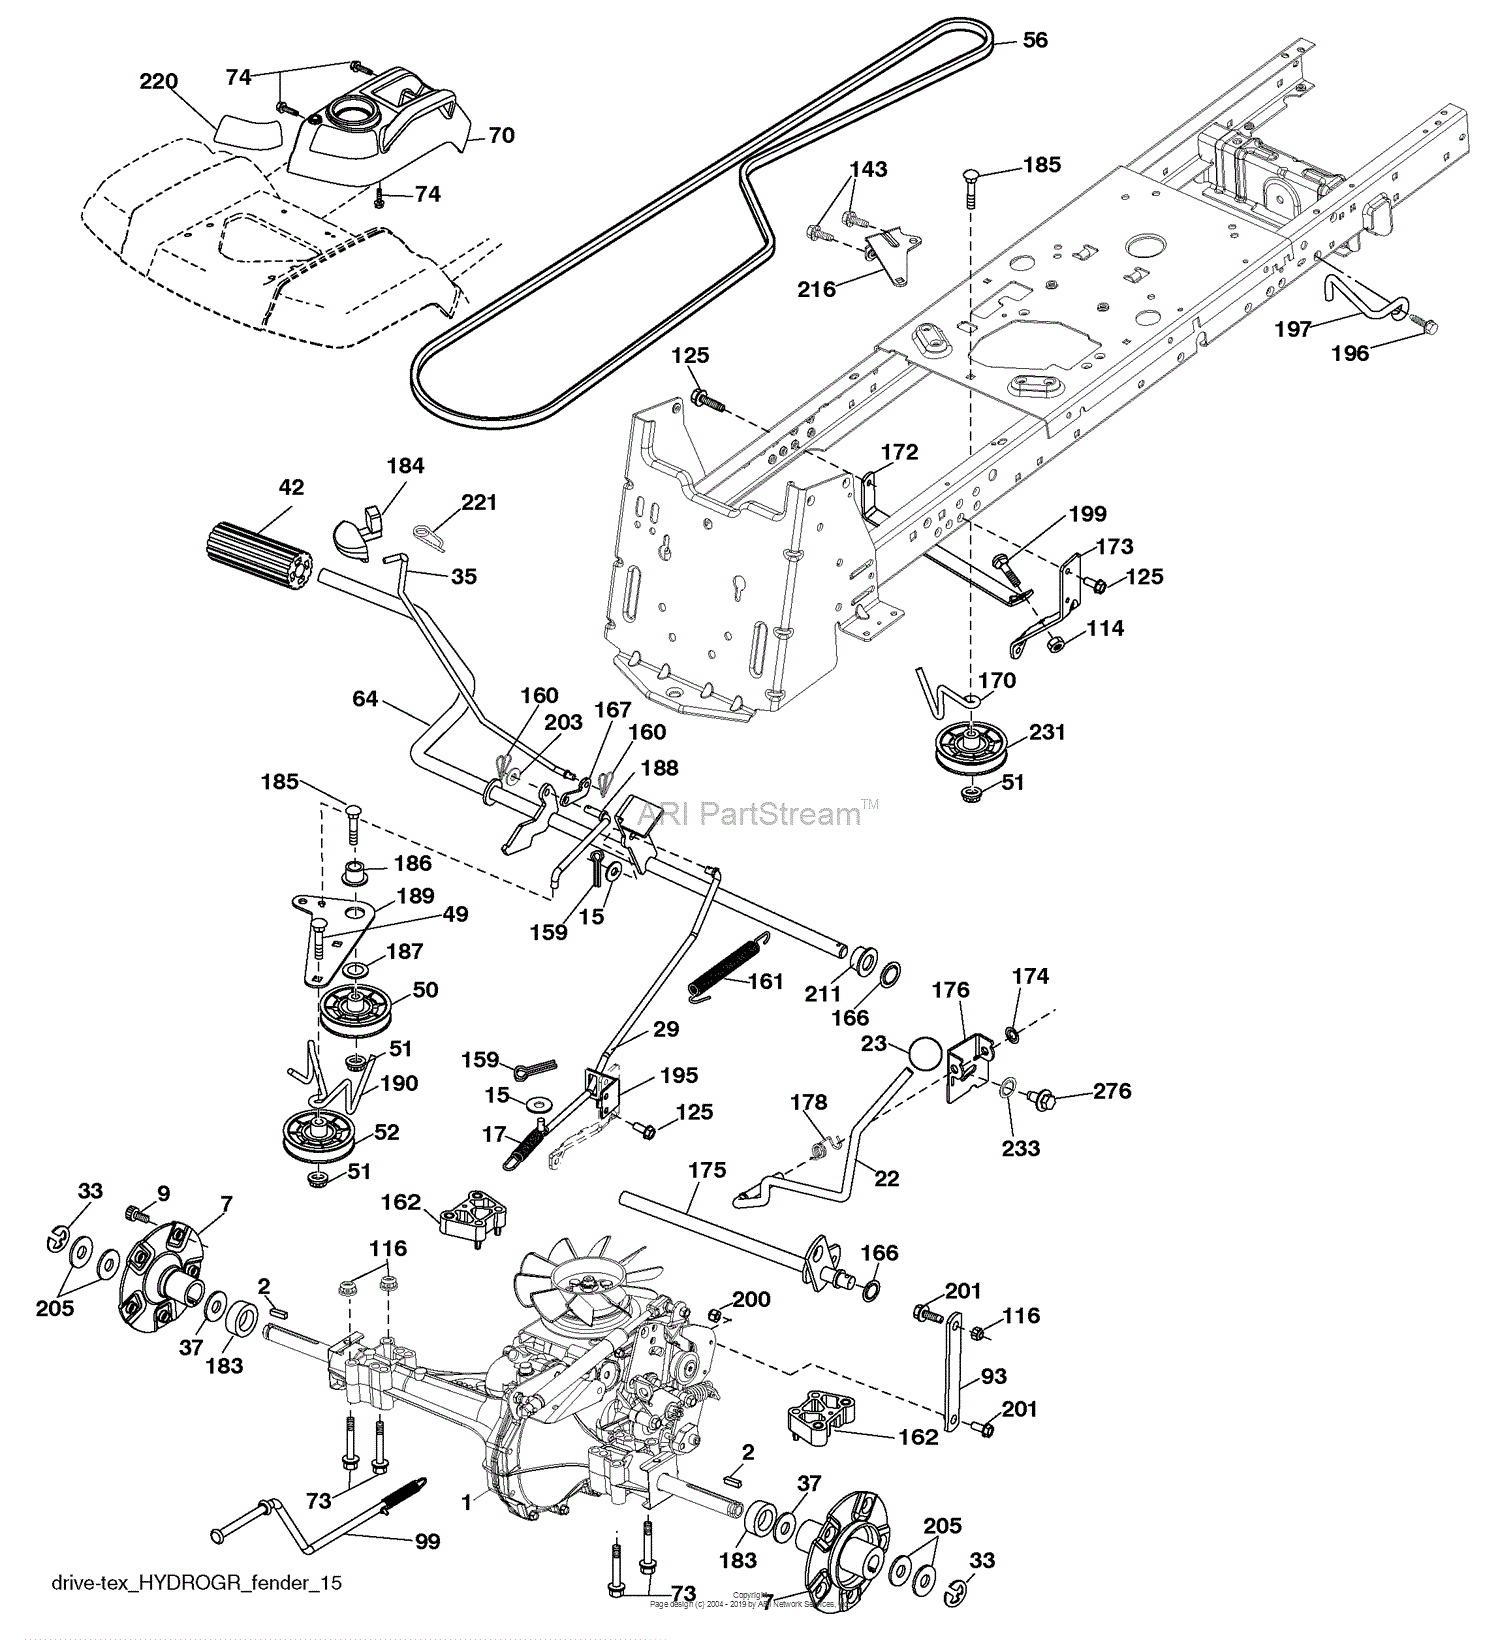 Husqvarna LGT 2554 (96045001501) (200905) Parts Diagram for Drive